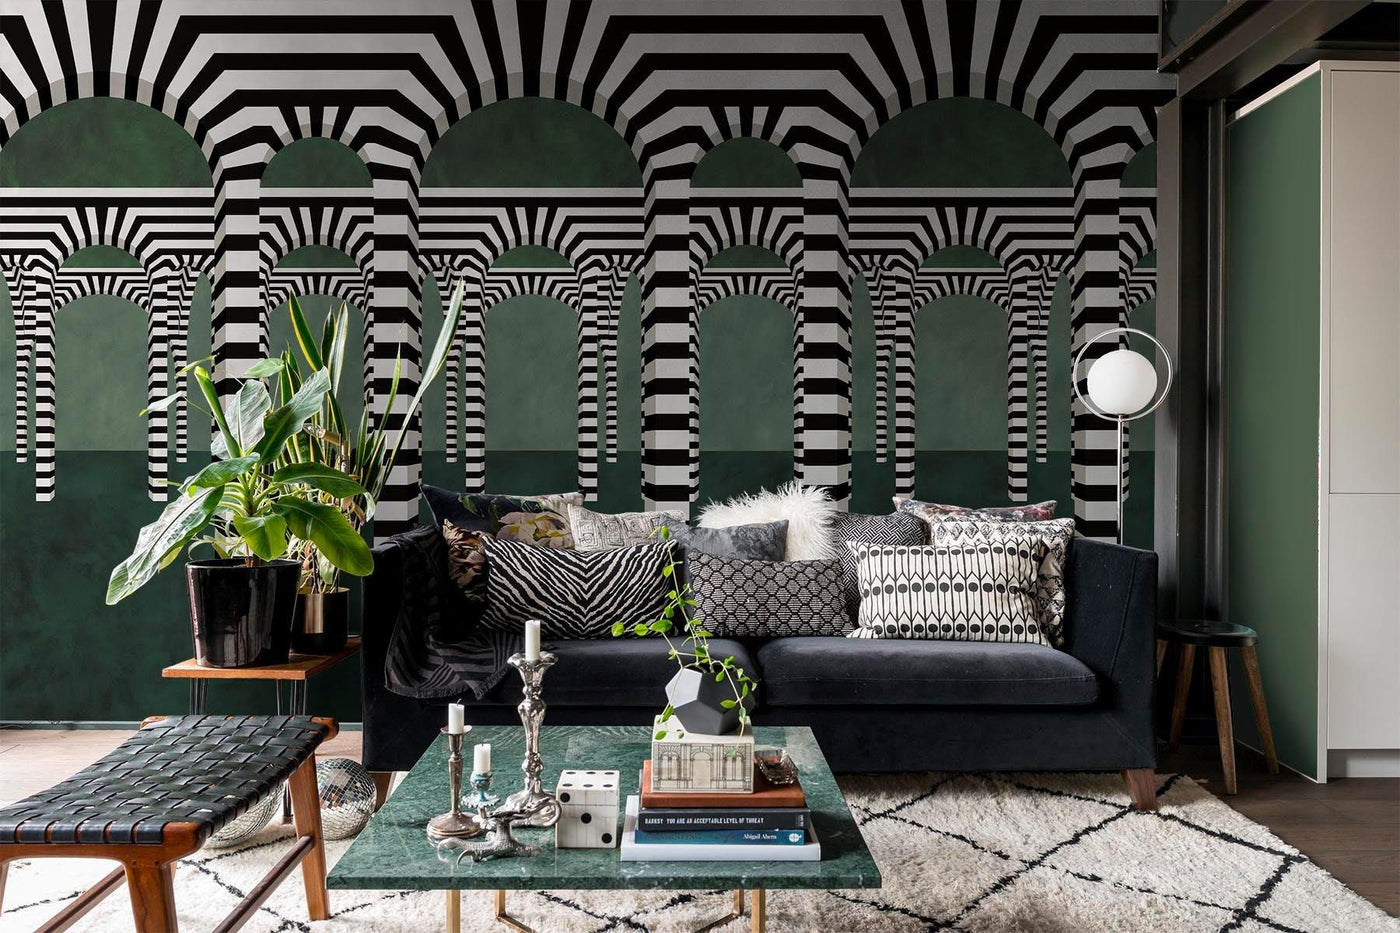 Djärv svartvit valvvägg väggmålning i grönt på vardagsrumets vägg bakom den grå soffan. Kvadratglasbord och en leteringsbänk i svart på sidan. Vit matta med svart Argile -motiv på trägolvet